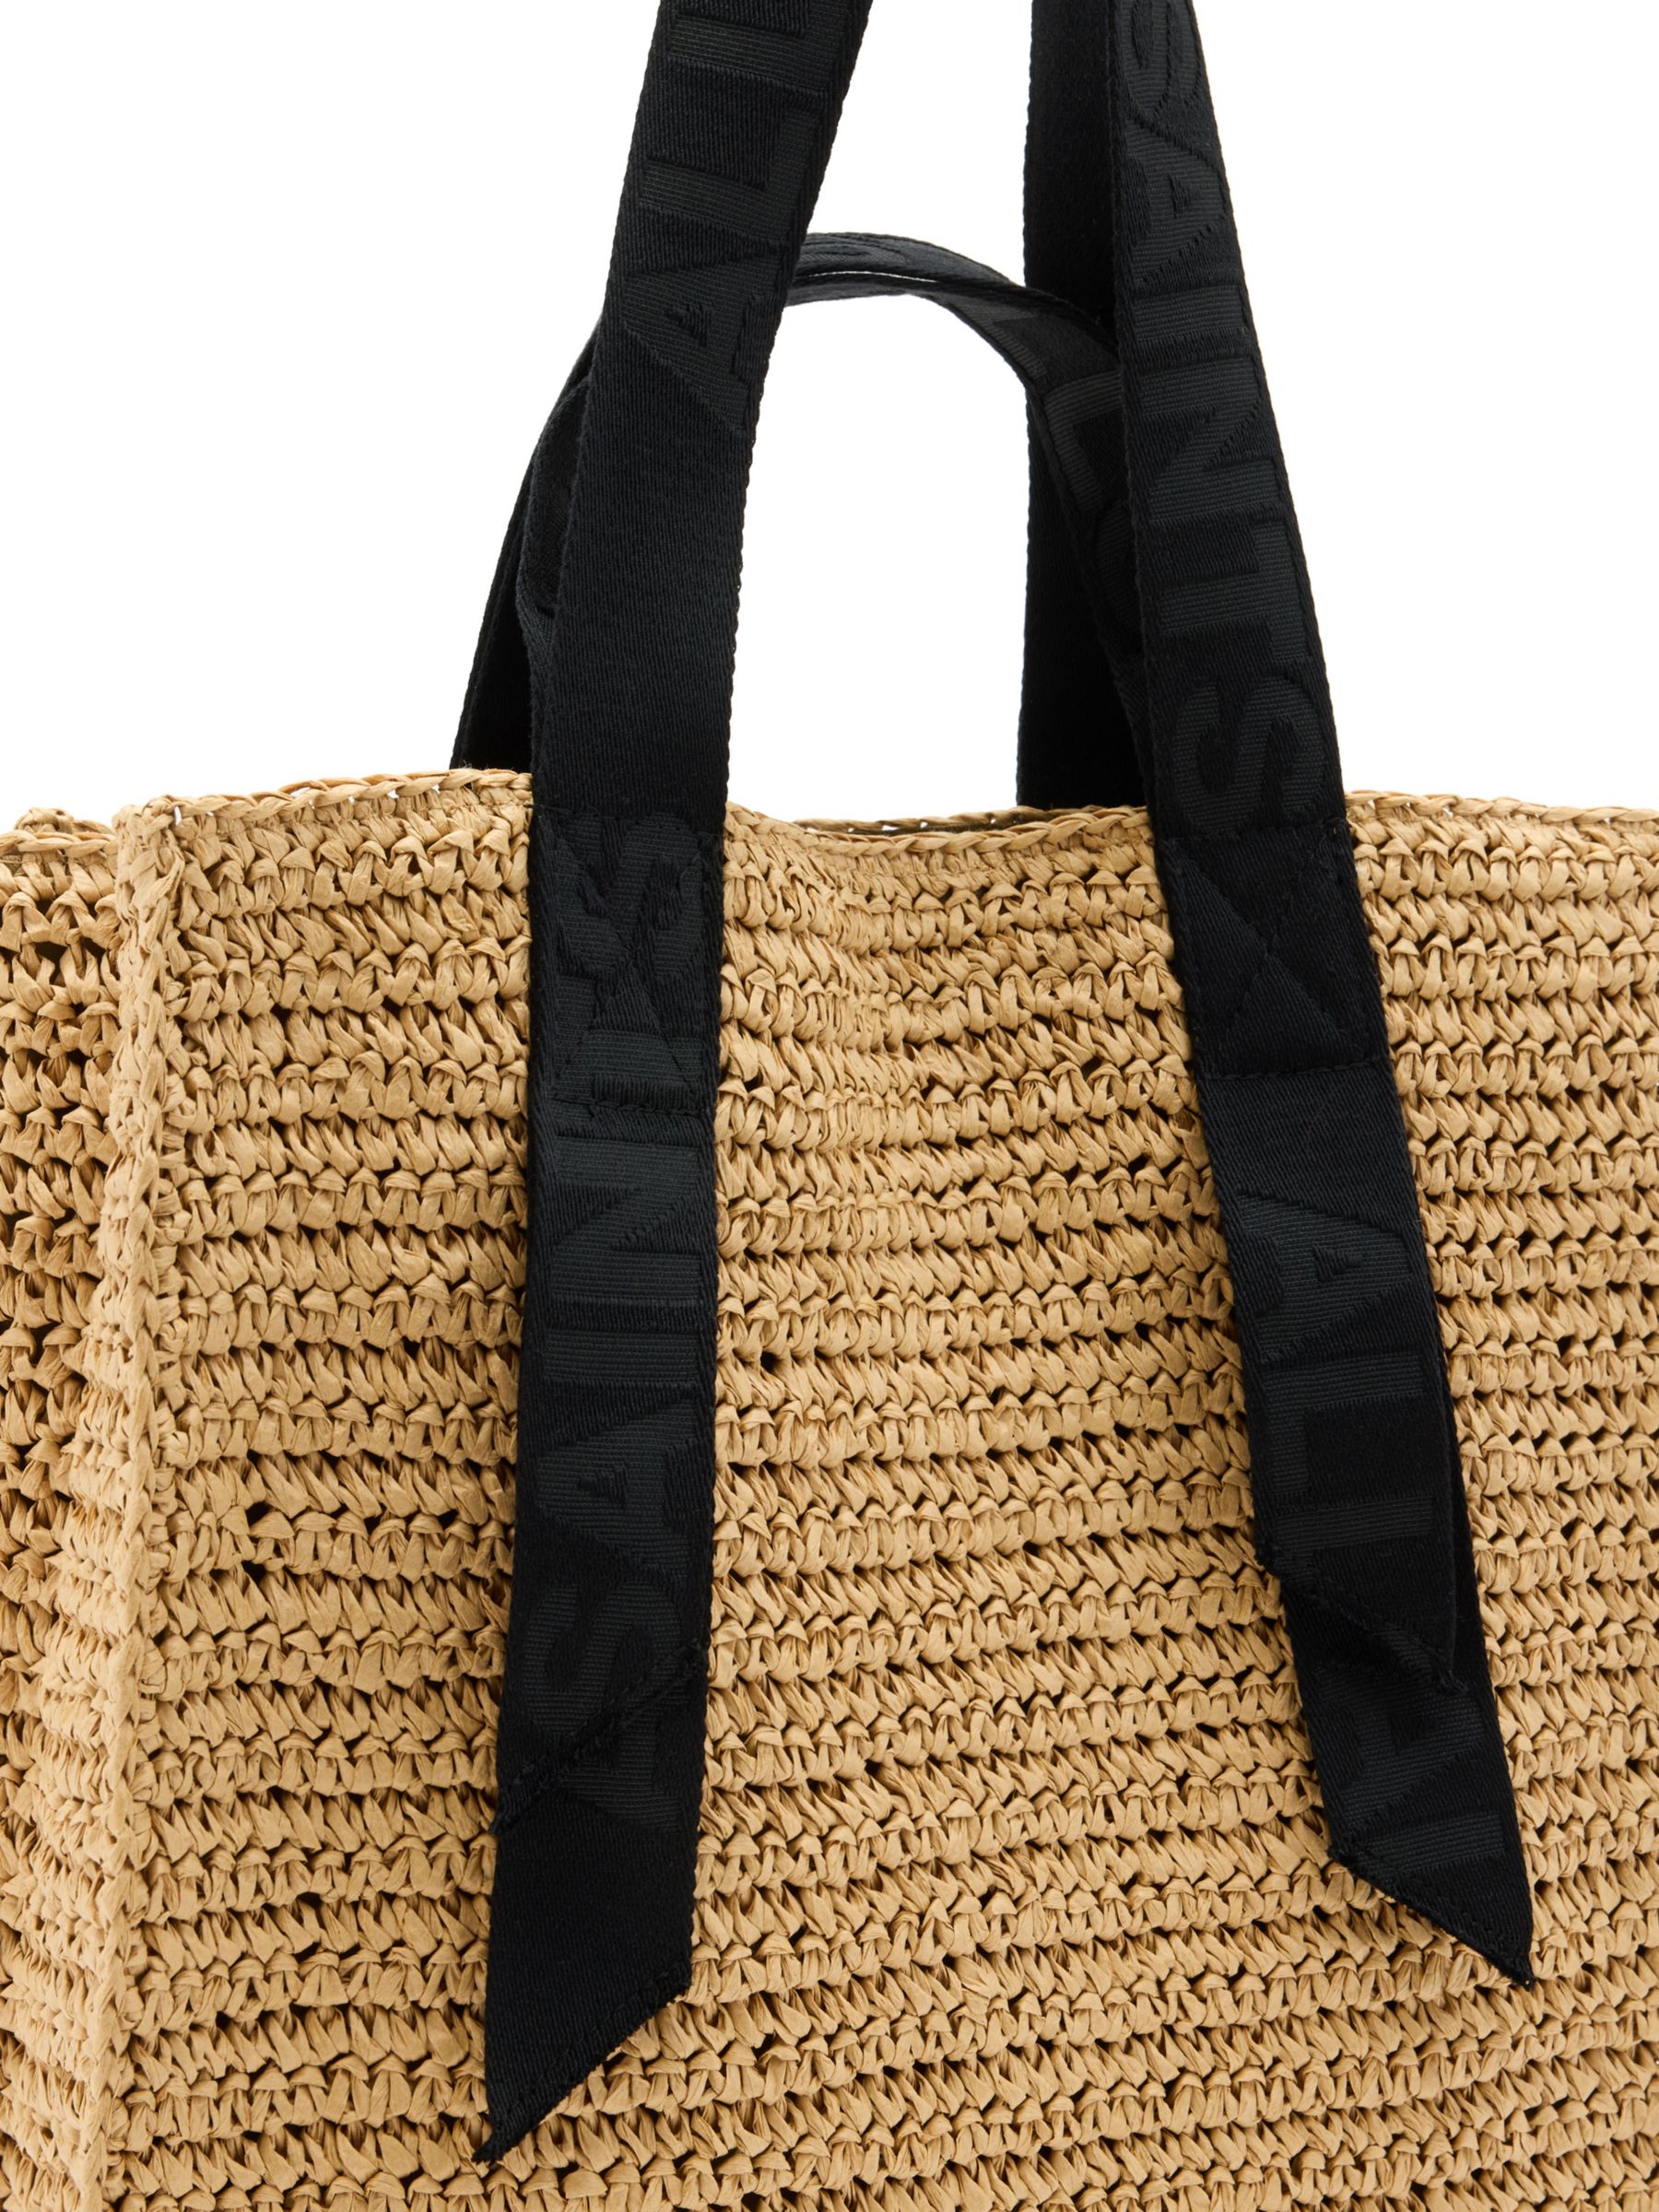 AllSaints Lullah Tote Bag, Almond/Black, One Size